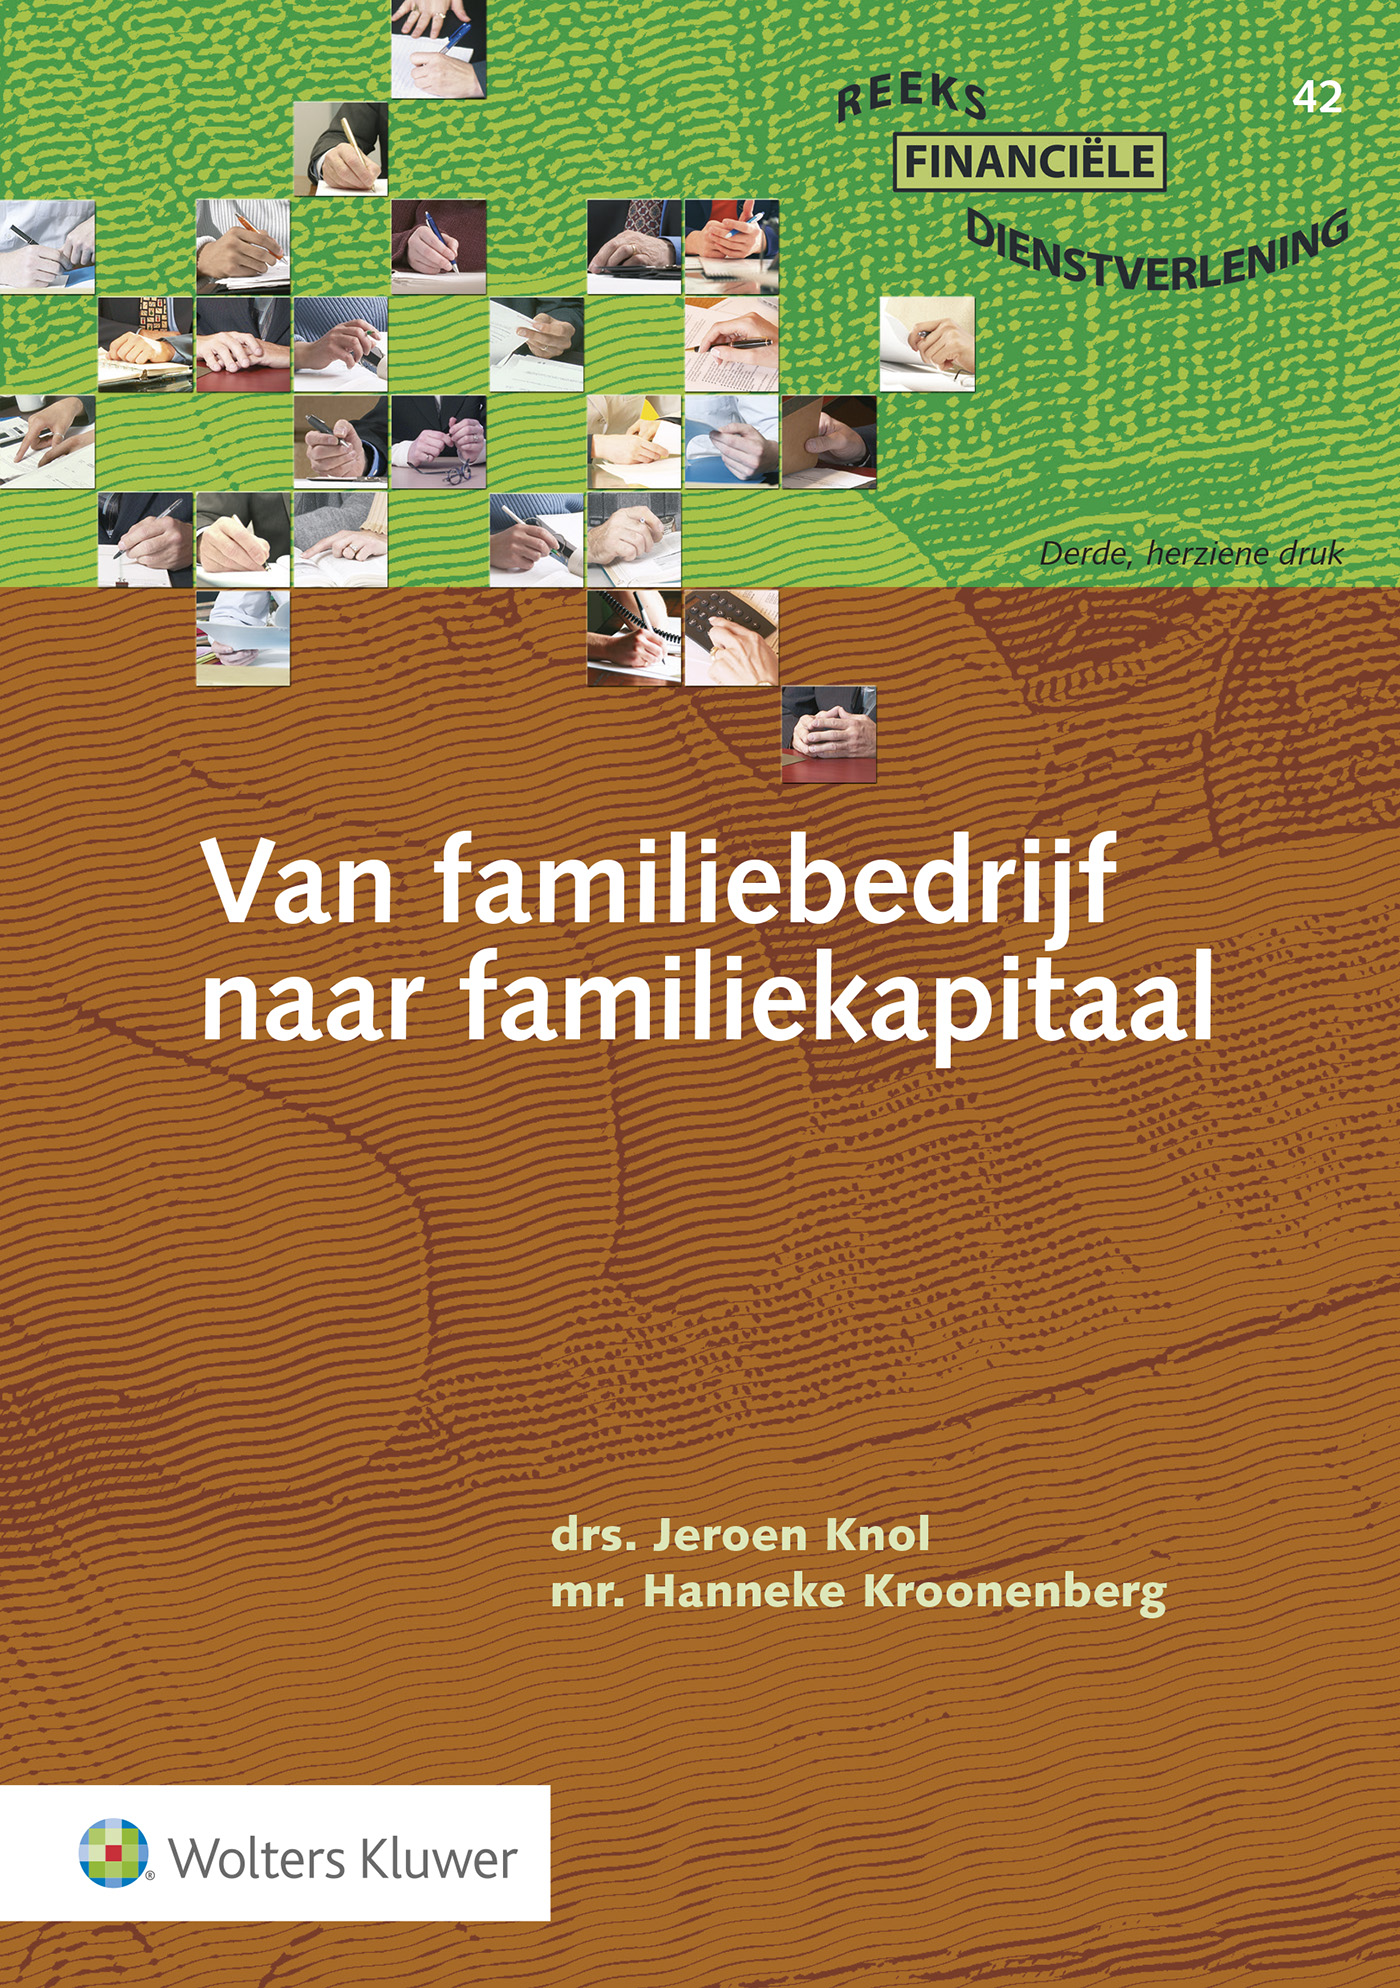 Van familiebedrijf naar familiekapitaal (Ebook)